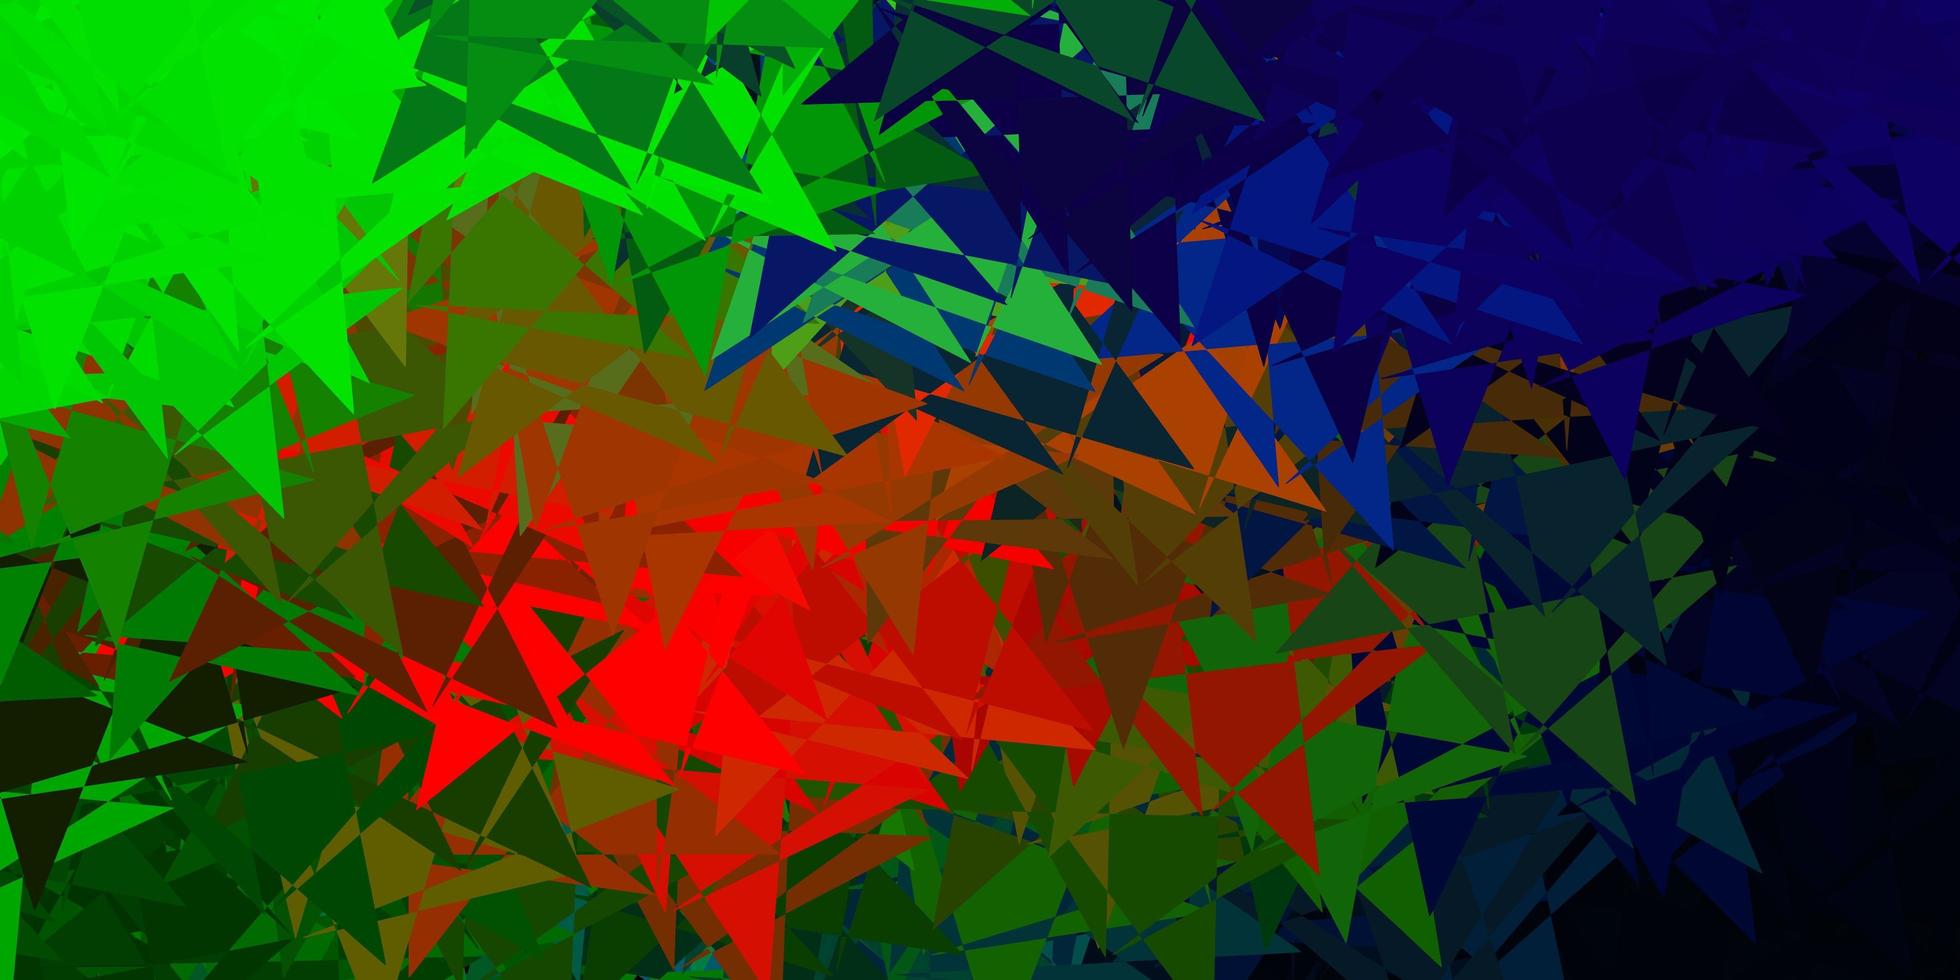 sfondo vettoriale multicolore scuro con triangoli.